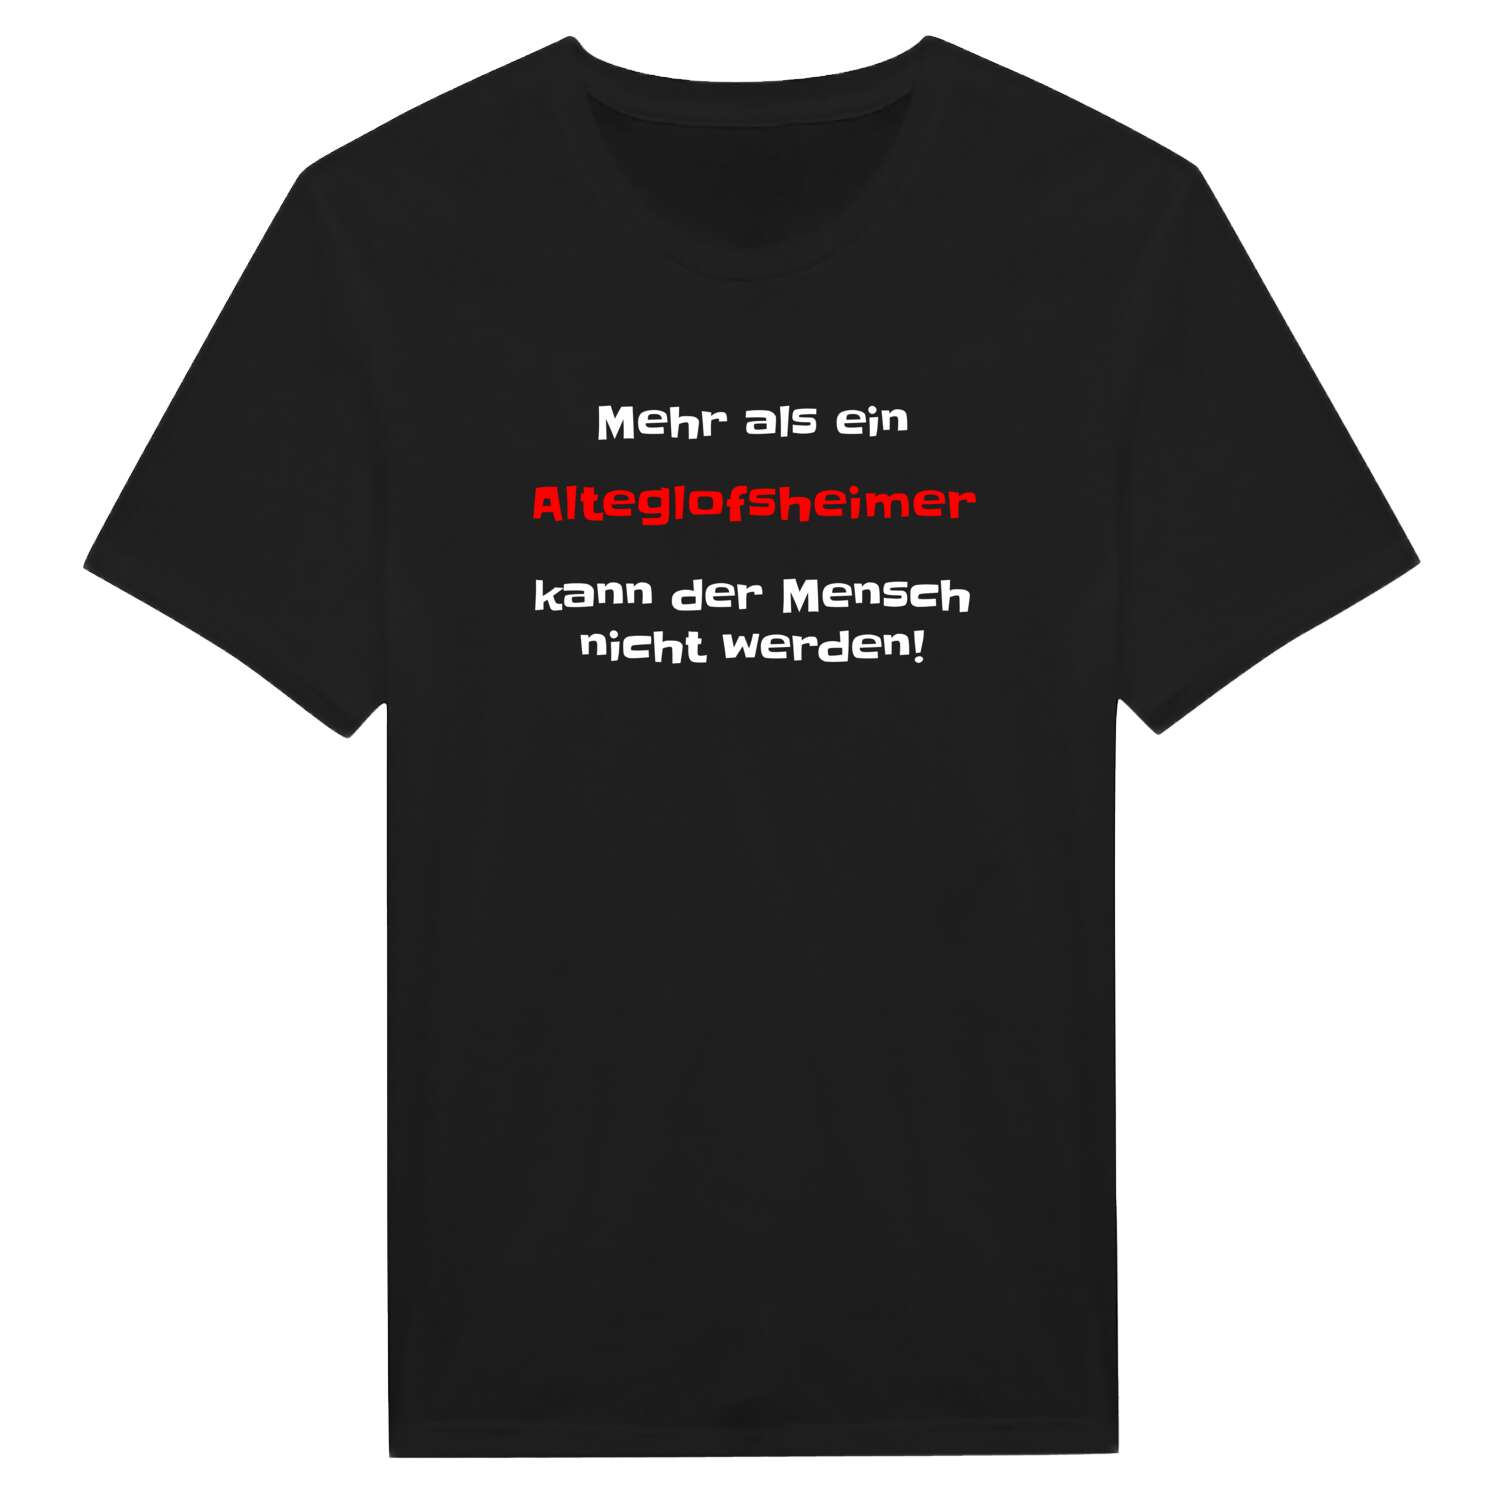 Alteglofsheim T-Shirt »Mehr als ein«